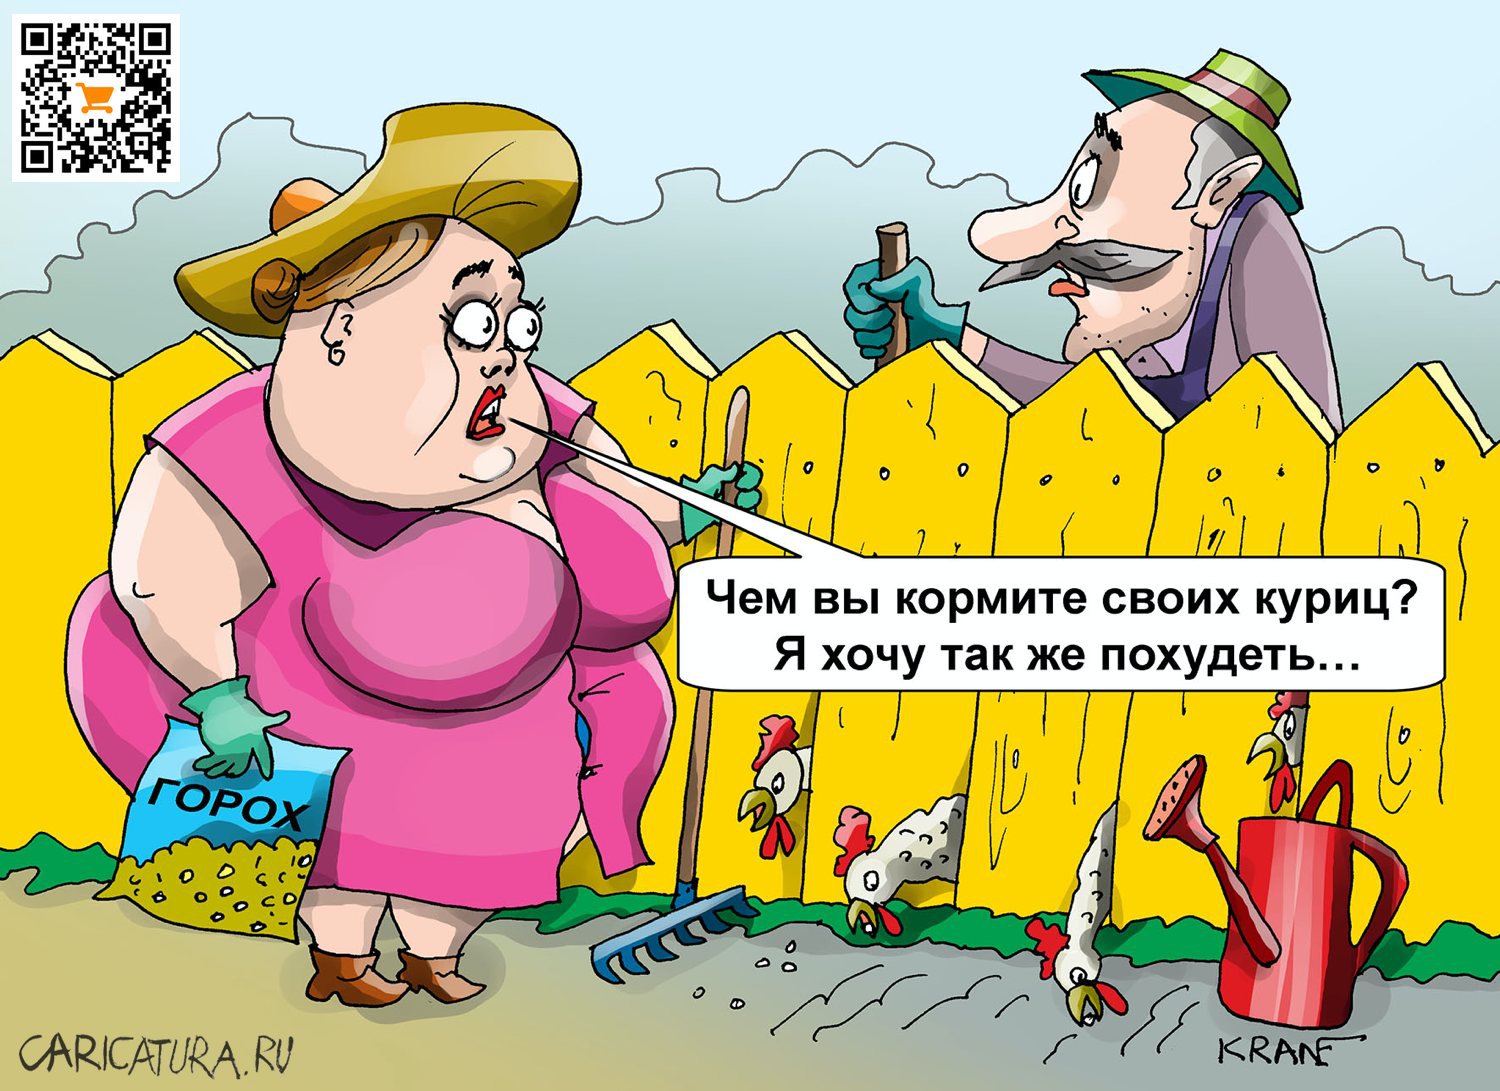 Карикатура "В вашем курятнике найдется место для меня?", Евгений Кран